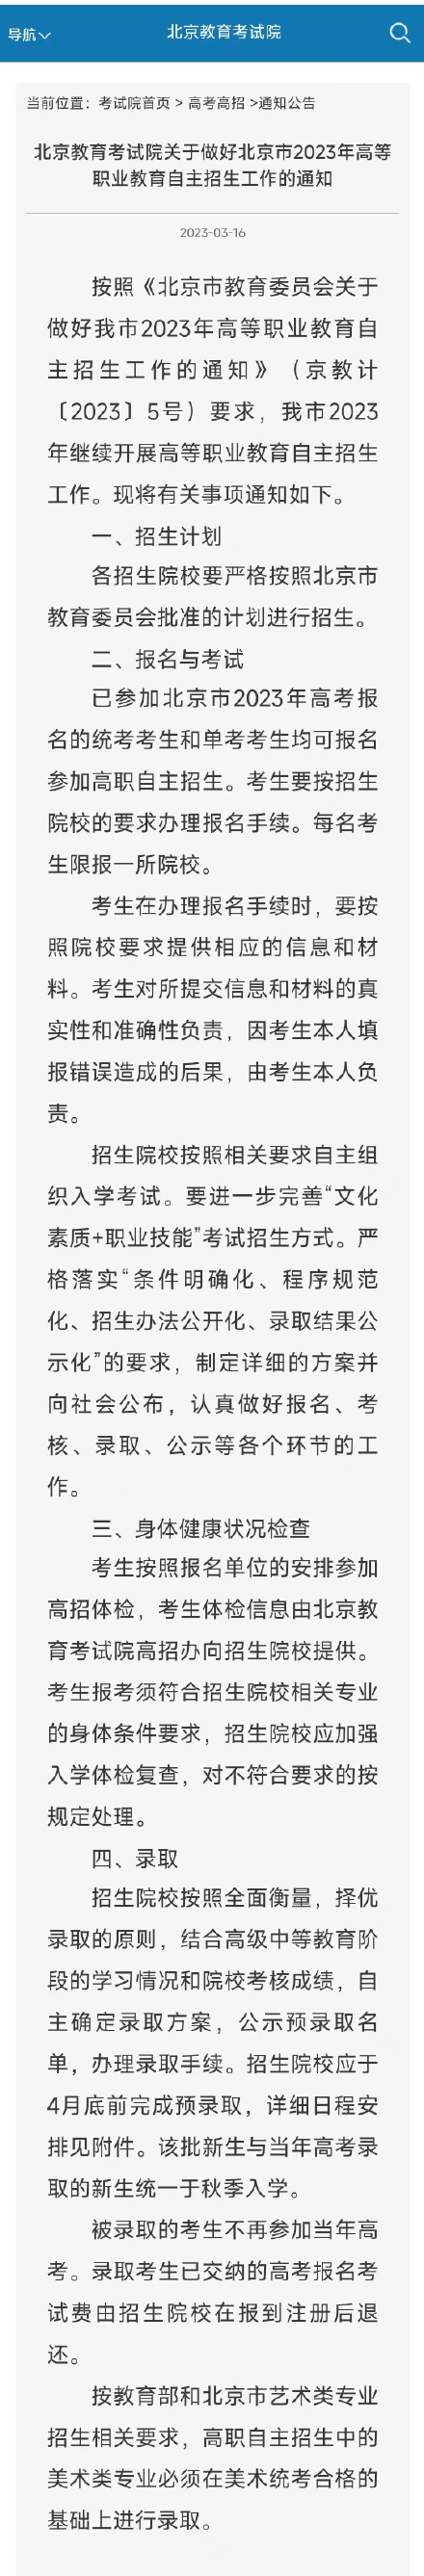 北京高职自主招生3月22日起报名，每名考生限报1所院校